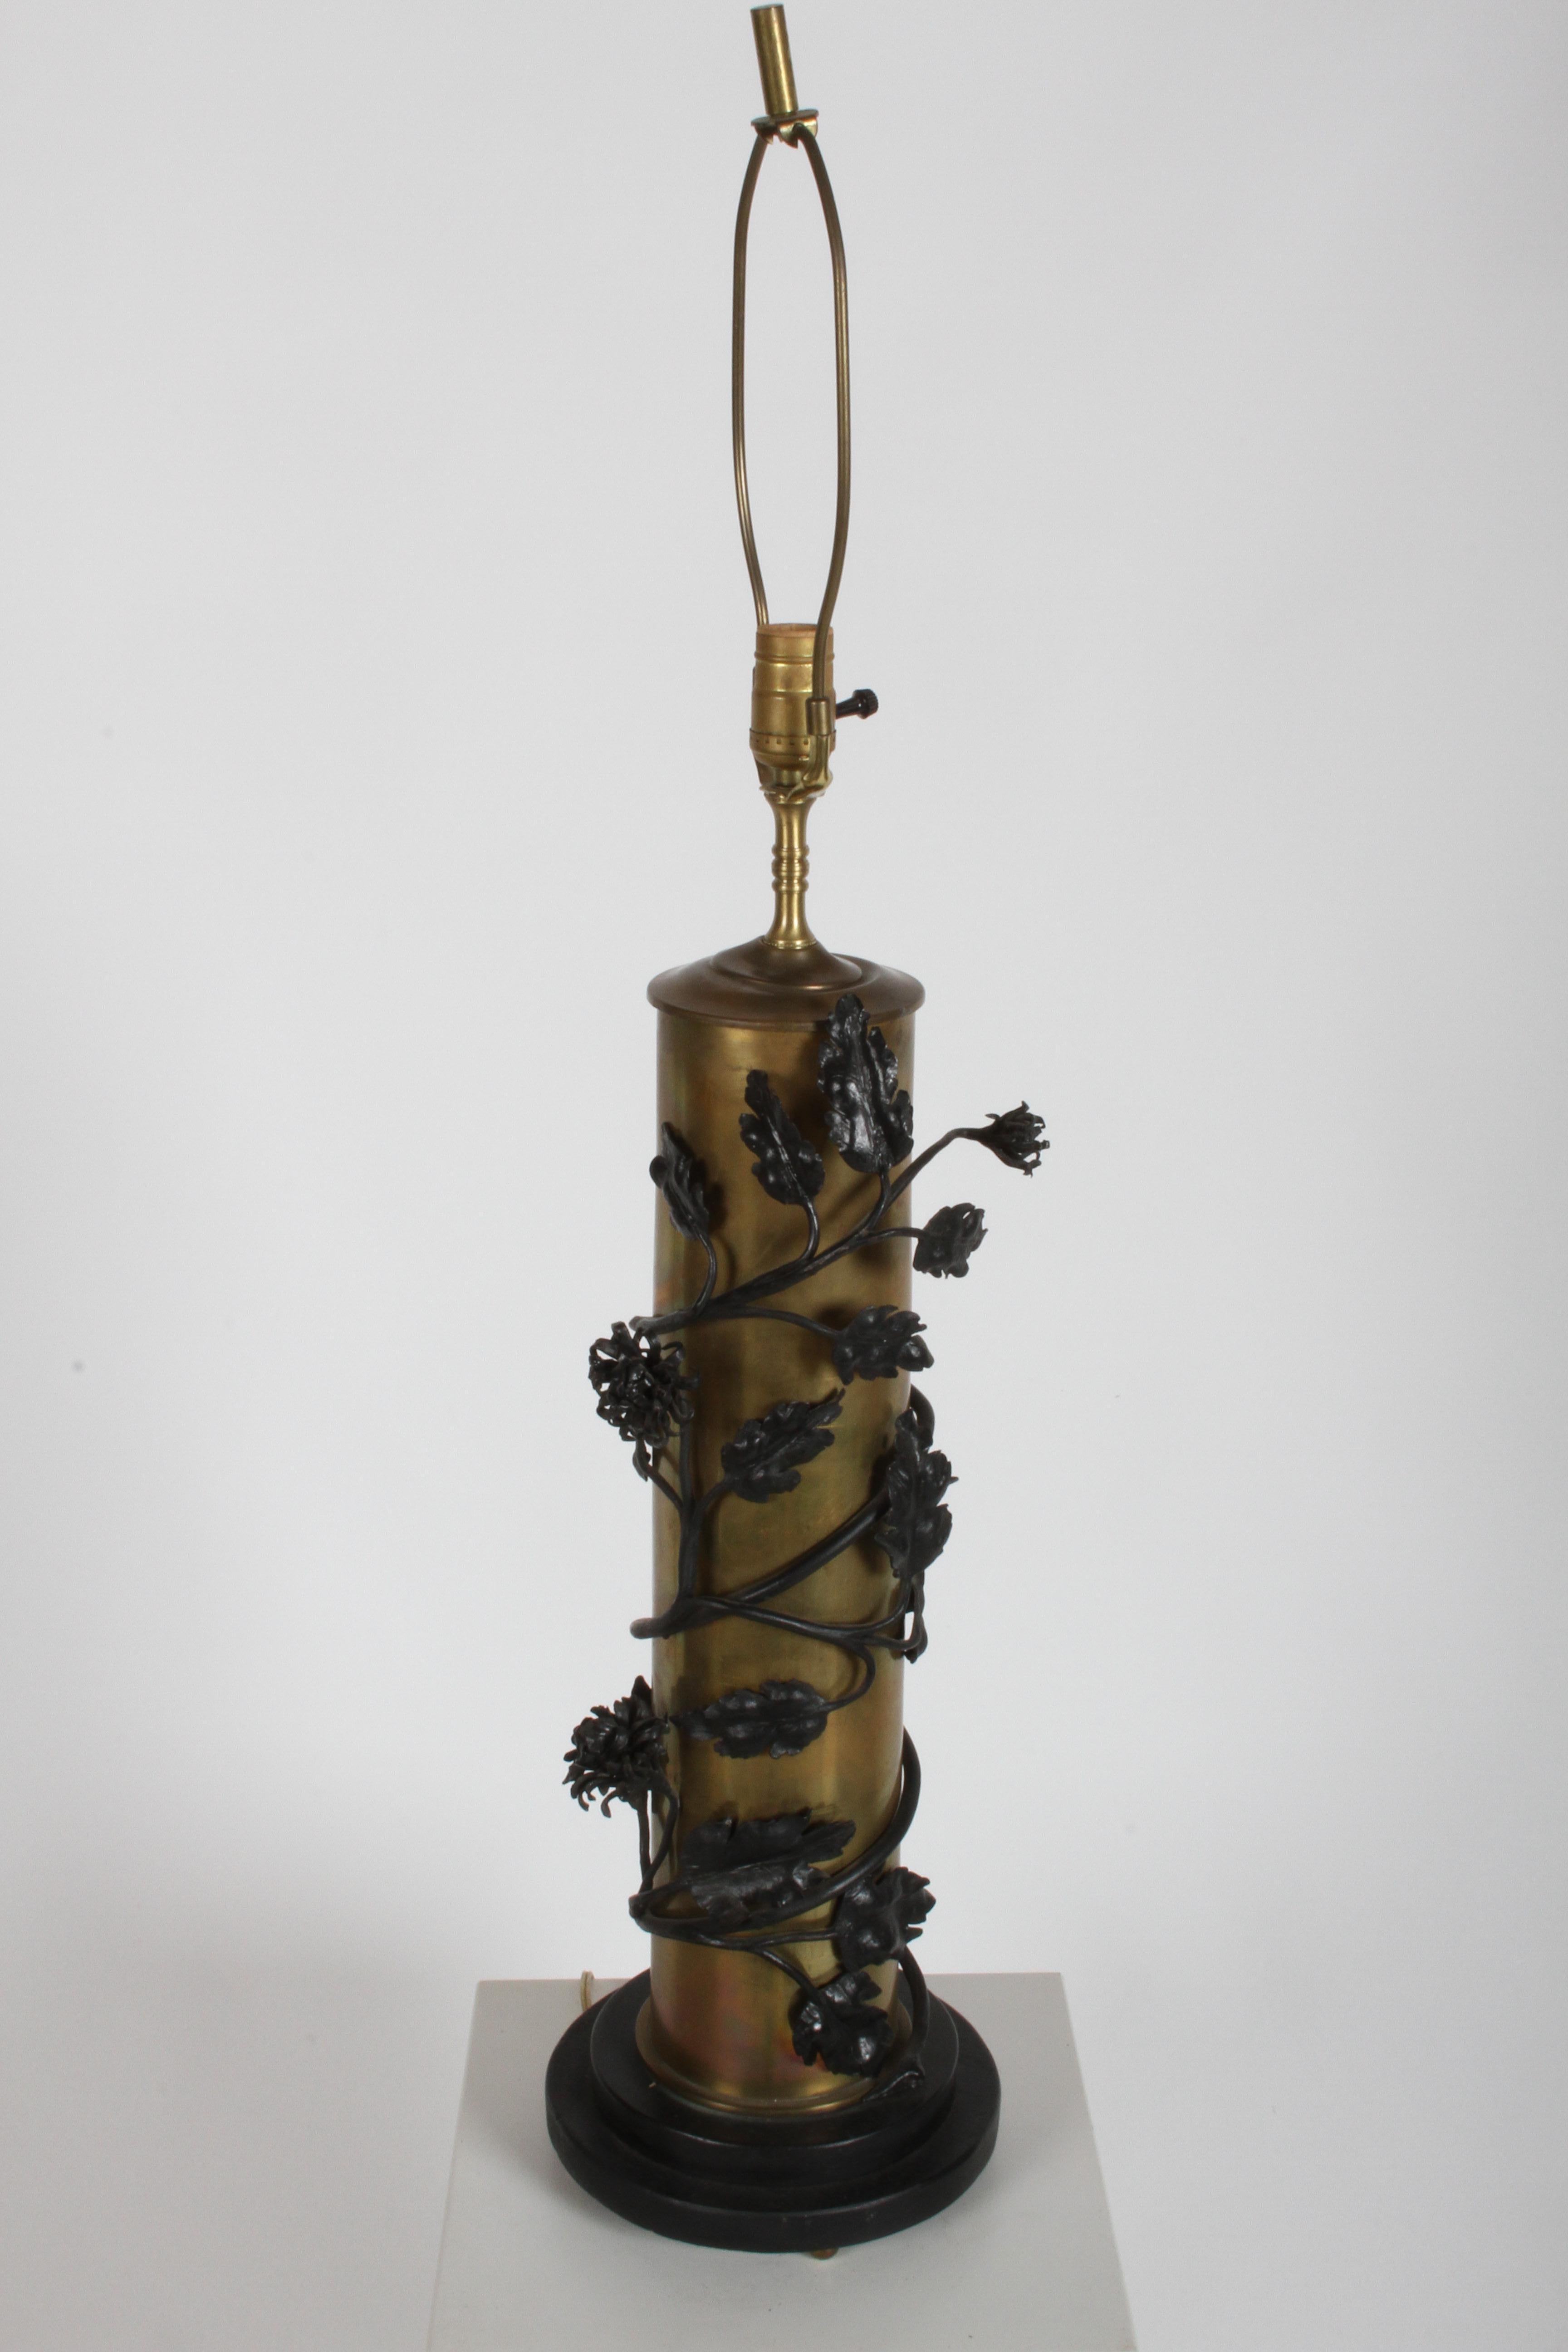 Paire de lampes cylindriques uniques du milieu du siècle en tôle de laiton, enveloppées de vignes et de tiges de fleurs en fer, sur des bases en bois noir avec des pieds à boule en laiton. Patine chaude du laiton. Dans le style du Tole français et